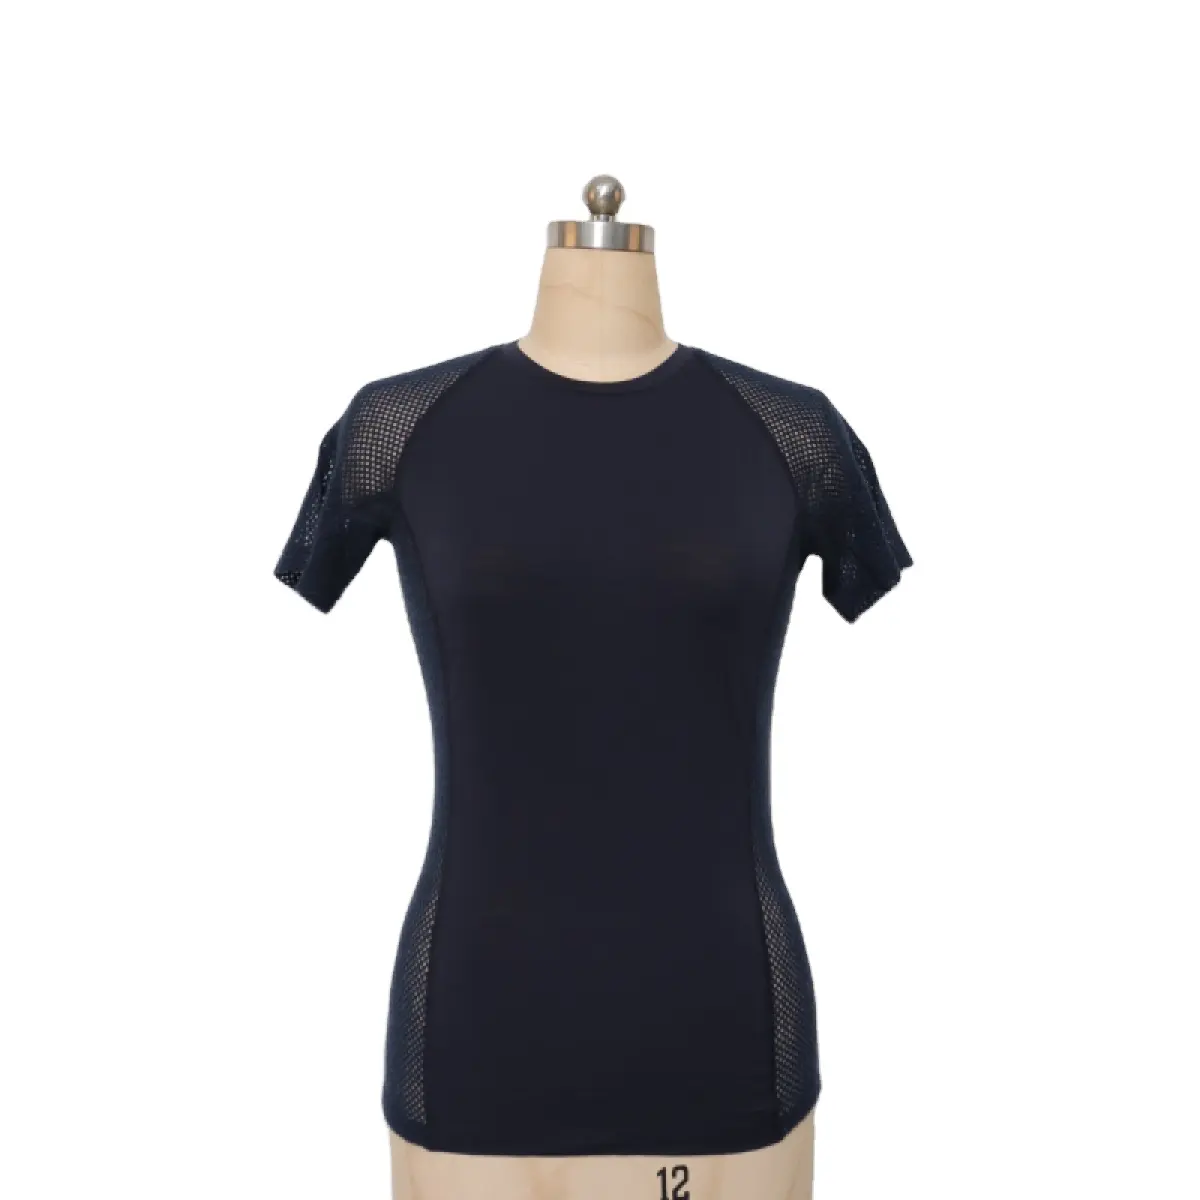 womens merino wool tops short sleeve running t shirt